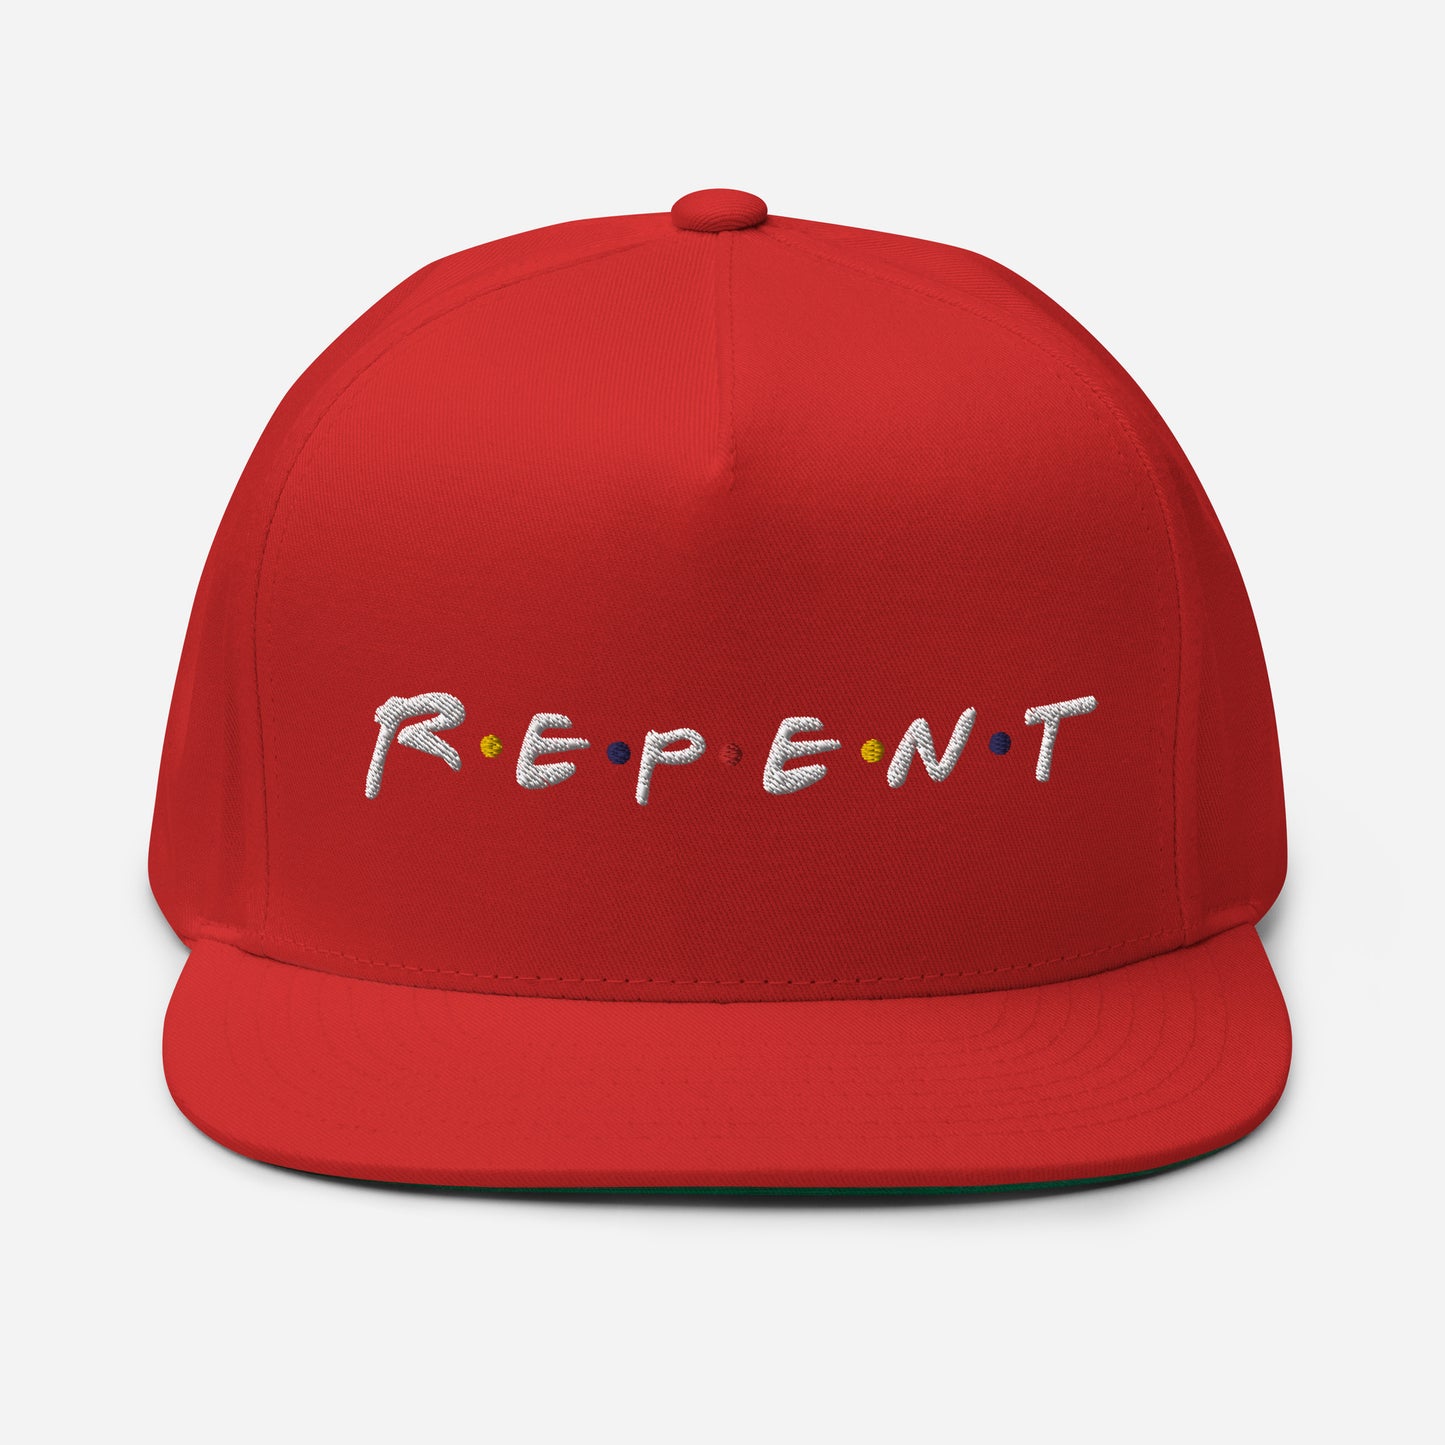 Repent Flat Bill Cap